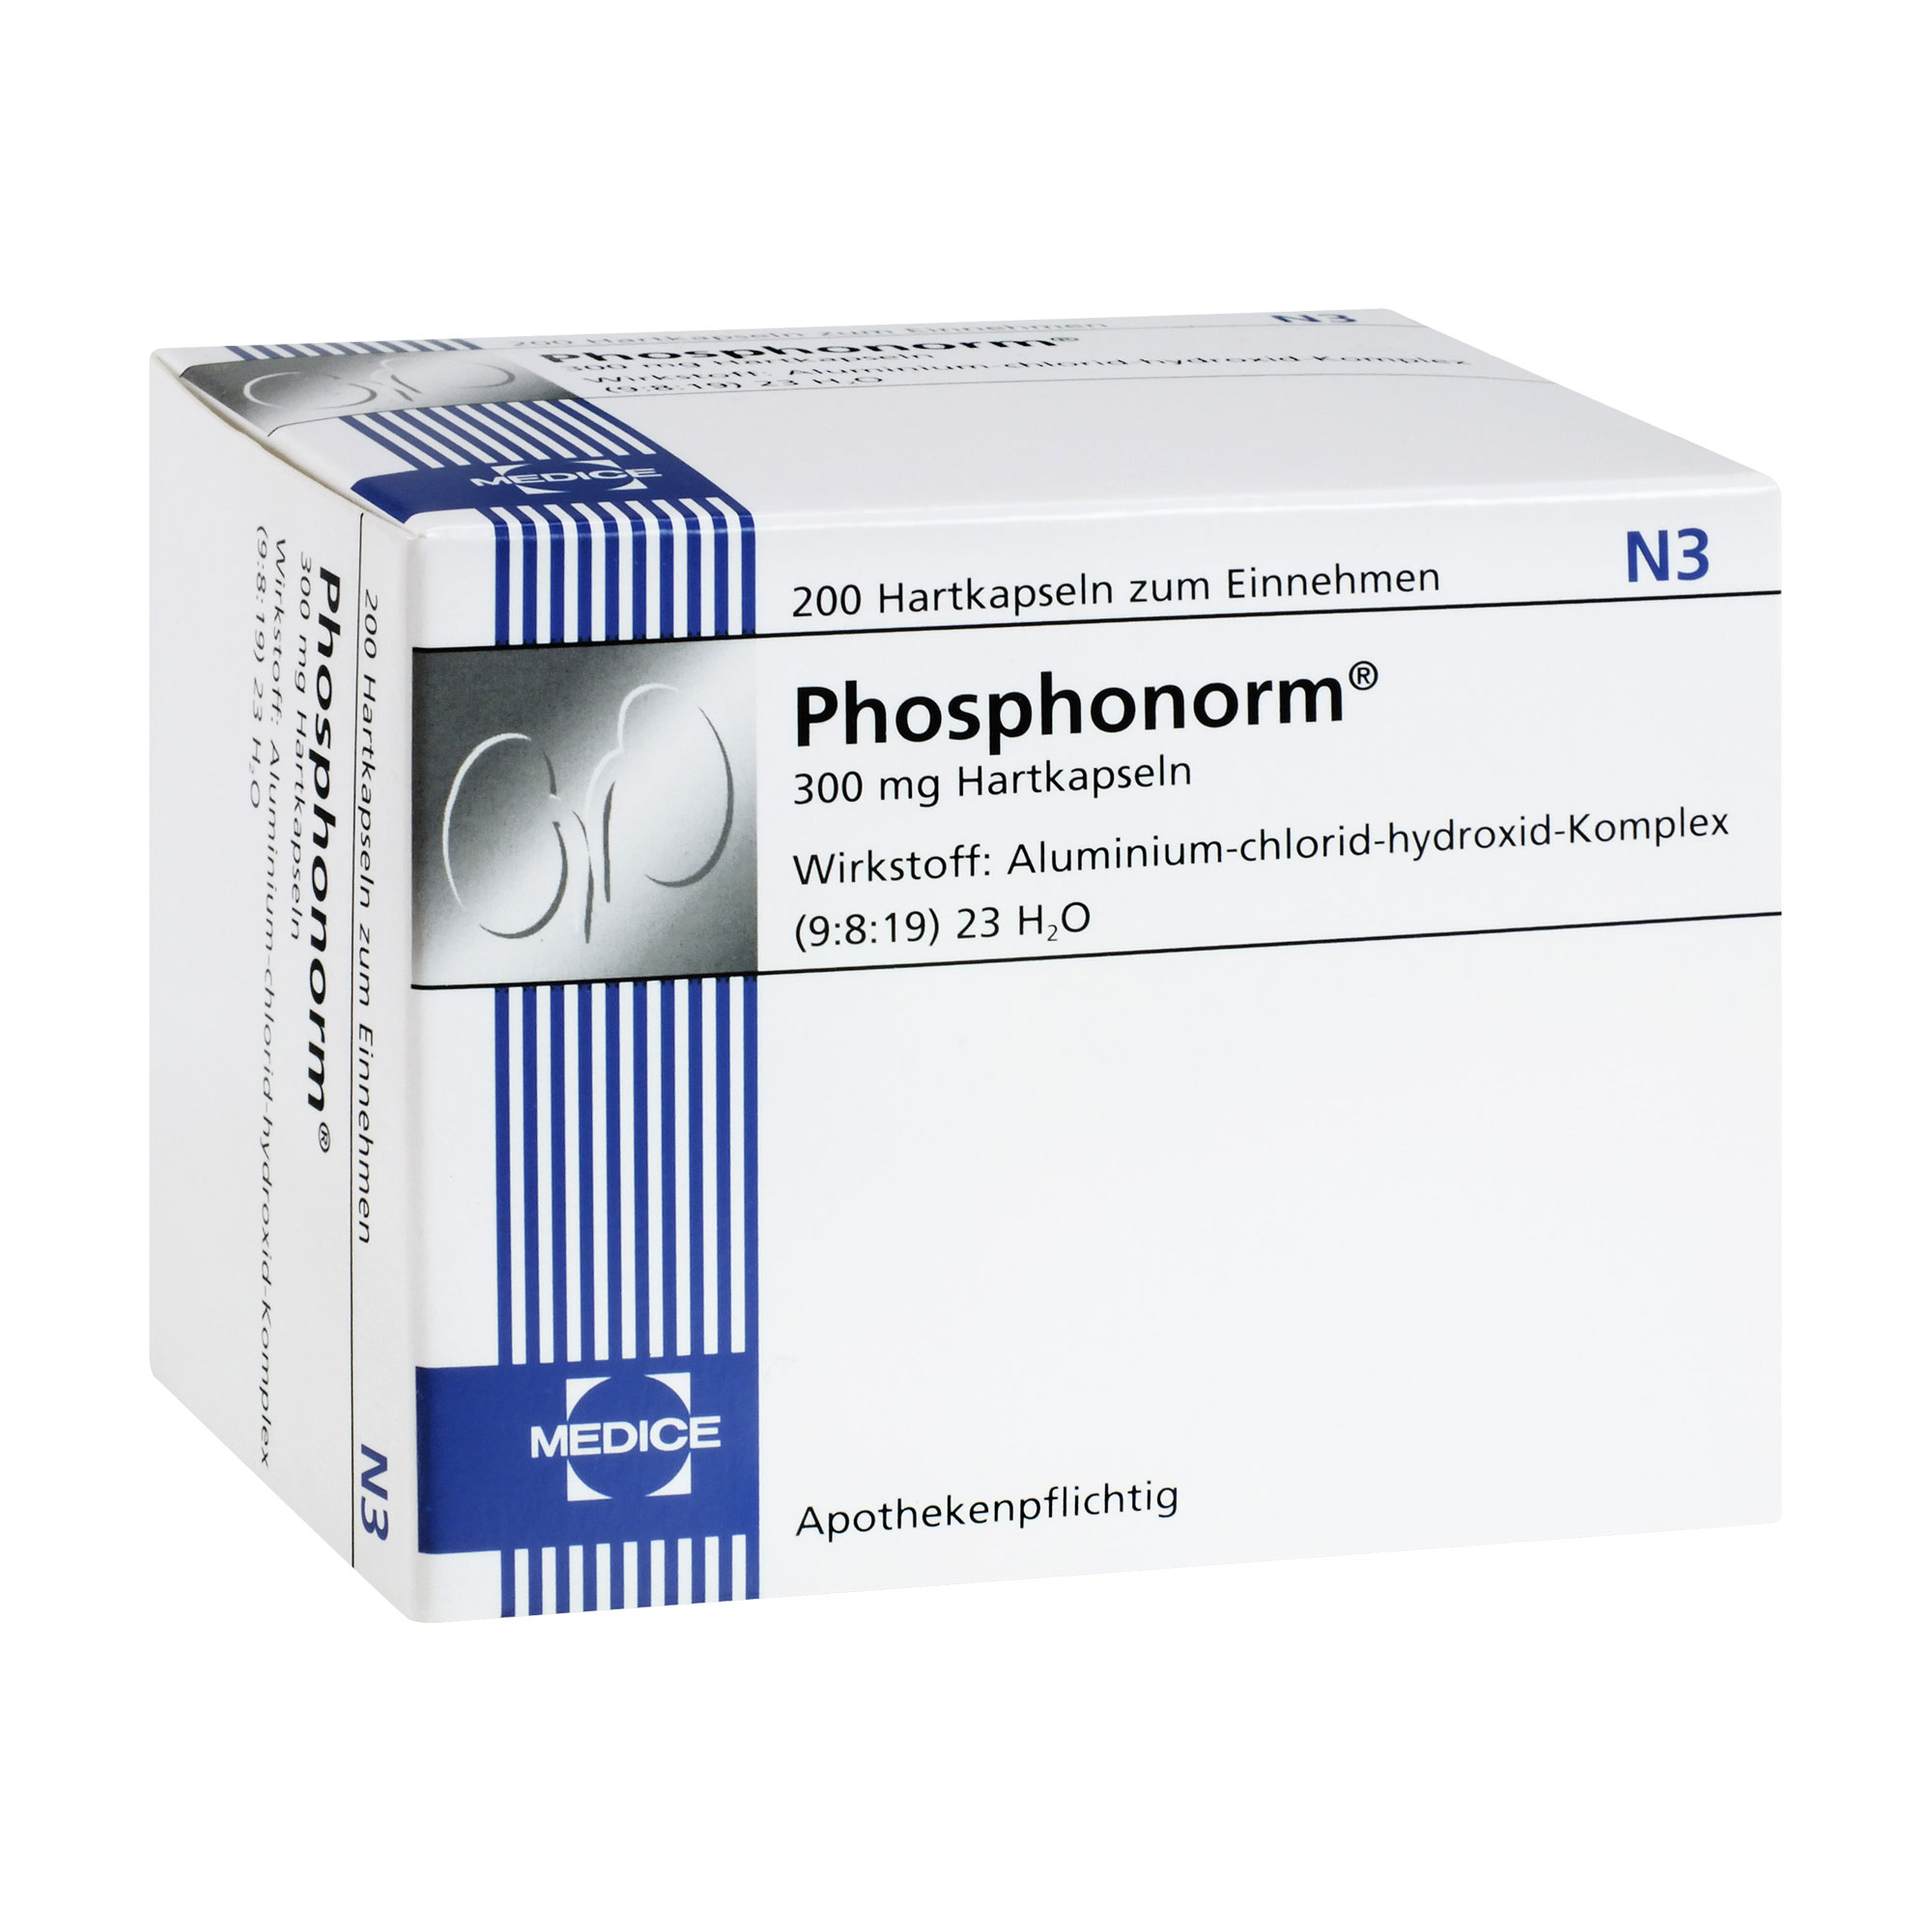 Zur Verminderung der Phosphataufnahme aus dem Darm bei Patienten mit Niereninsuffizienz.